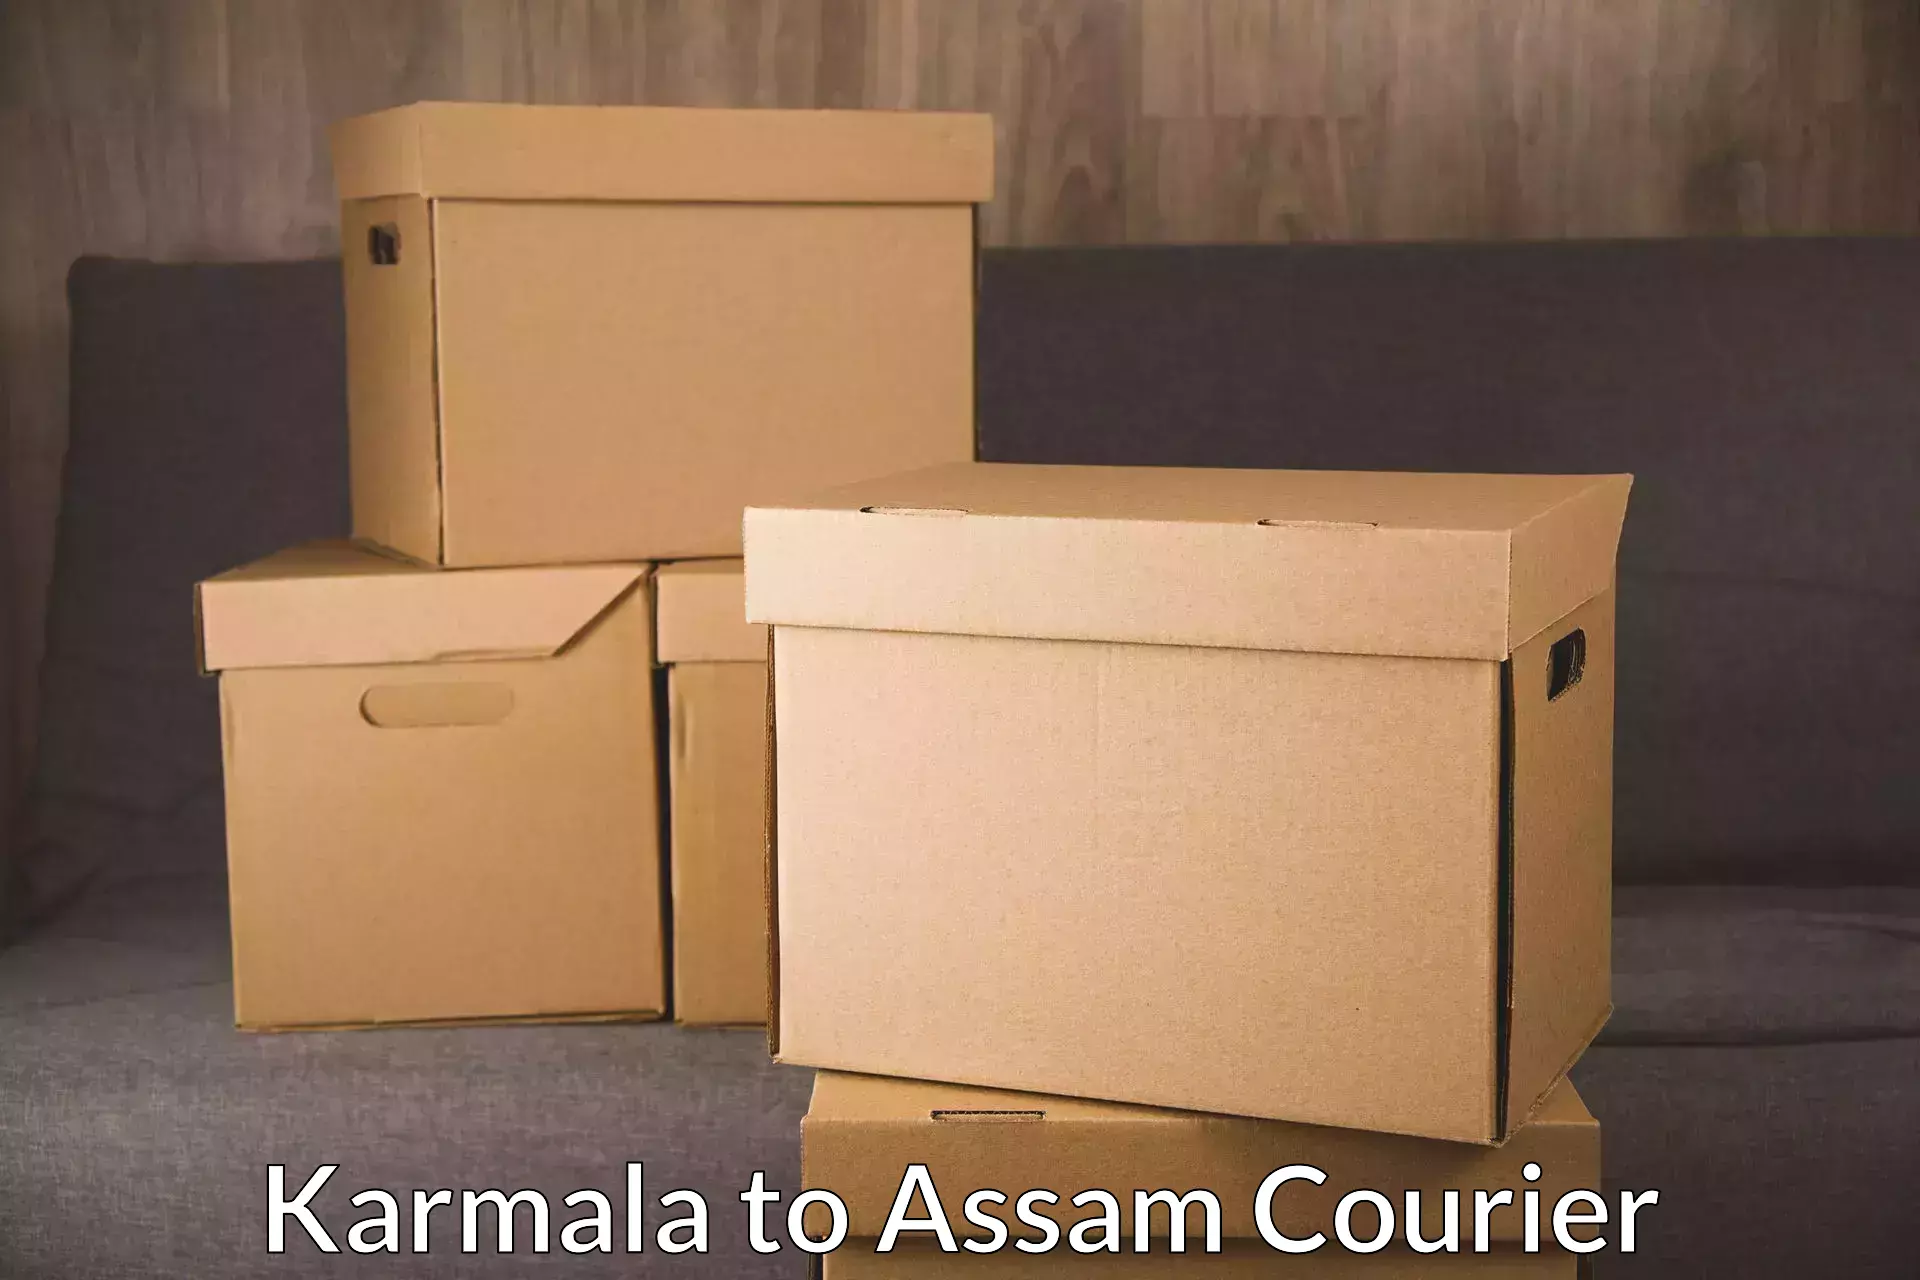 Efficient parcel service Karmala to Assam